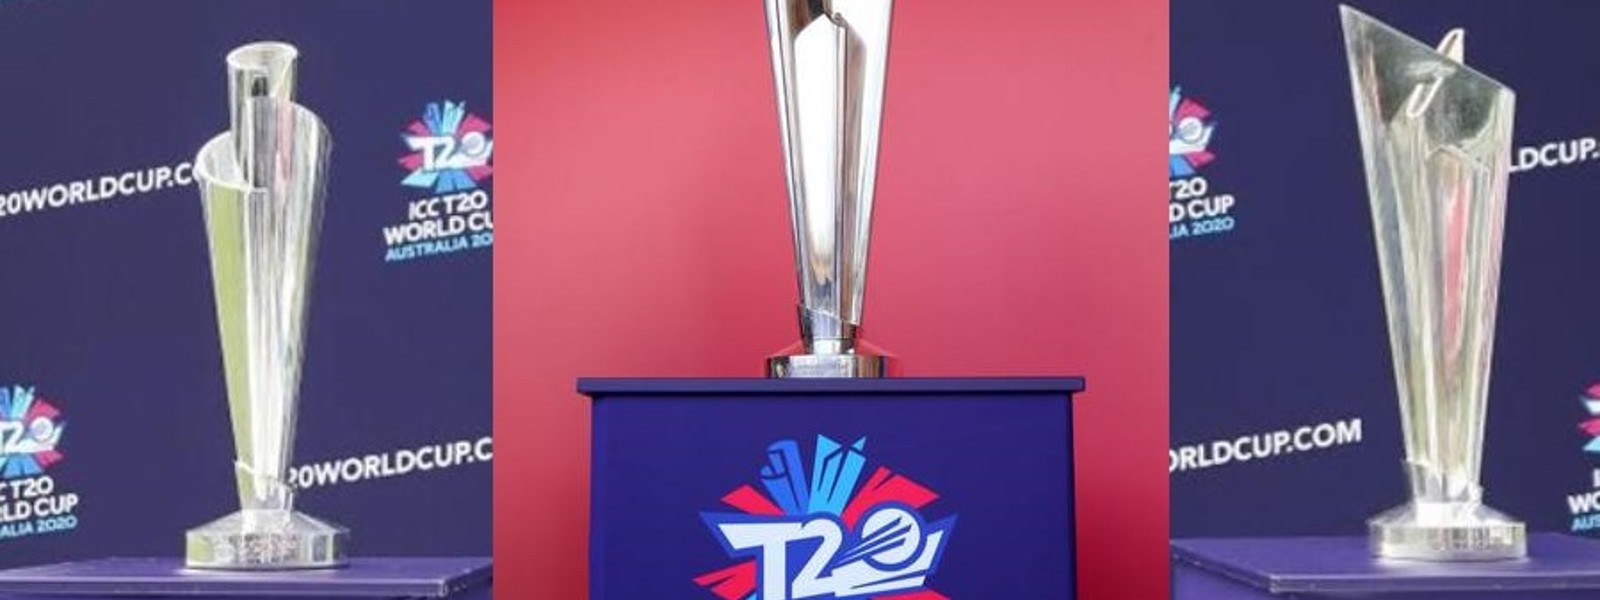 இந்தியாவும் இலங்கையும் இணைந்து நடத்தவுள்ள உலகக்கிண்ண T20 கிரிக்கெட் தொடர்